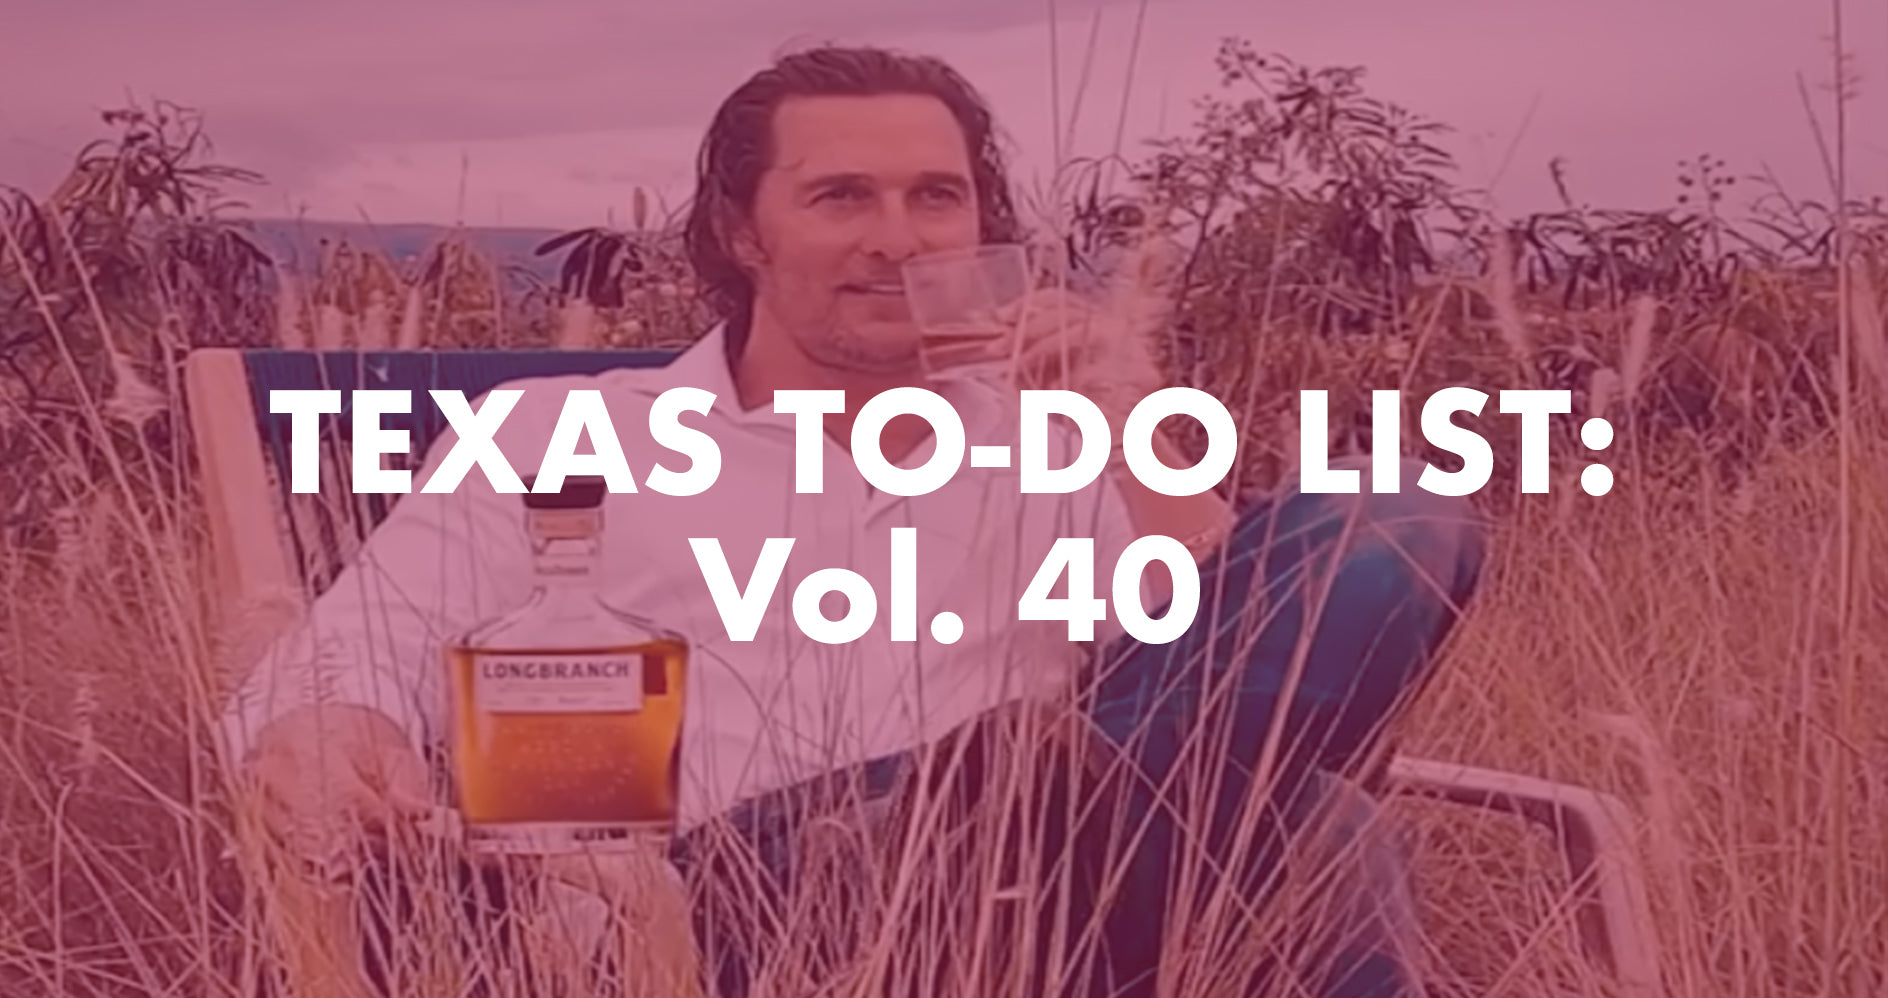 Texas To-Do List: Vol. 40